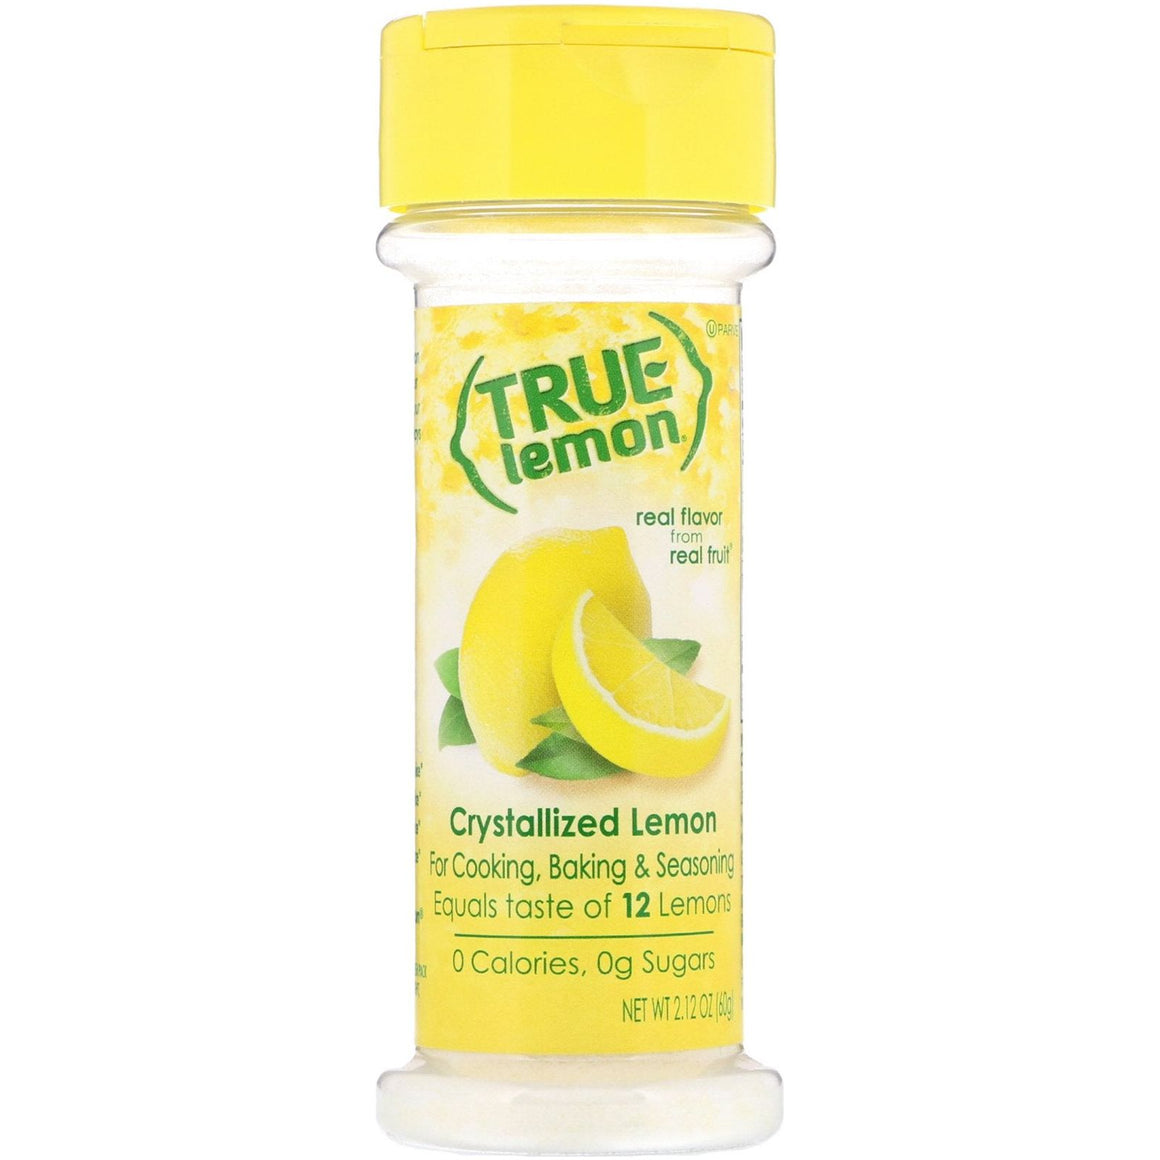 True Lemon - Shaker - Citron - 2,29 oz